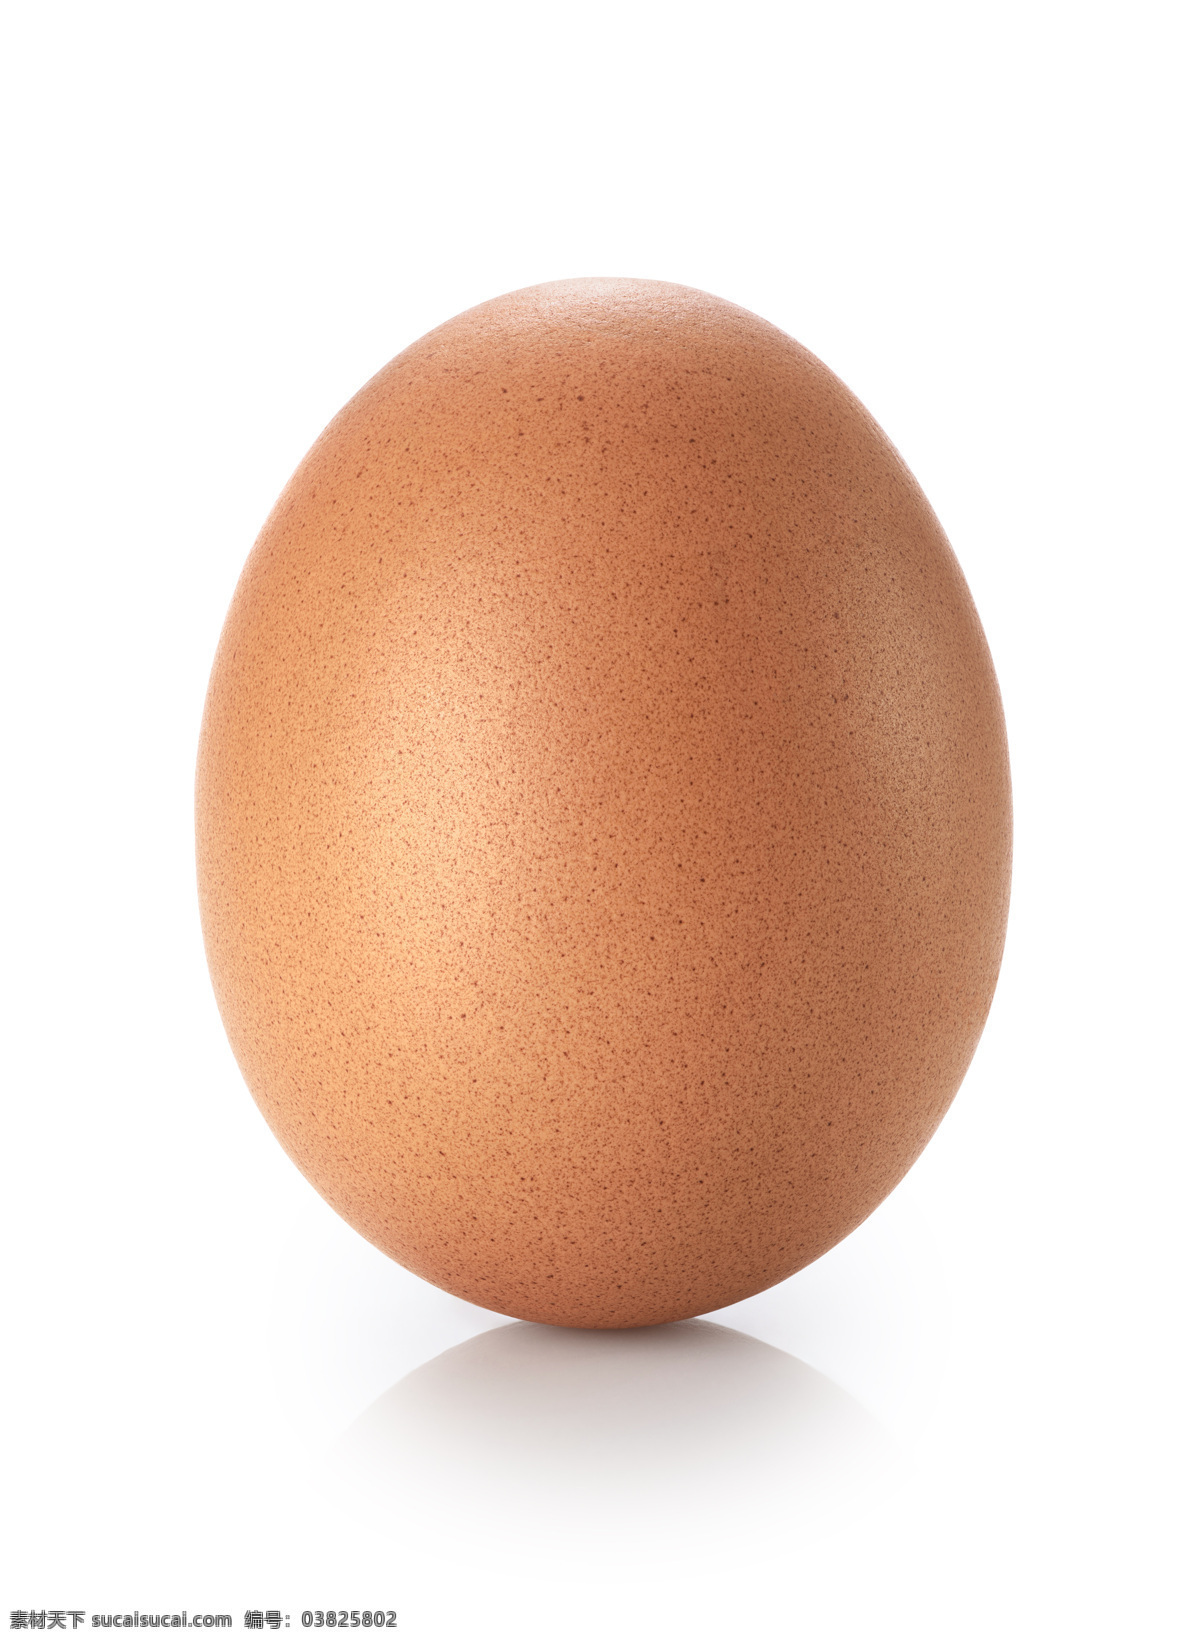 一个鸡蛋 一堆鸡蛋 多枚鸡蛋 多个鸡蛋 鸡蛋批发 绿色食品 鸡蛋 食品 营养 健康 美食 绿色 有机 食材 粮食 早餐 蛋 土特产 土鸡蛋 新鲜的 餐饮美食 食物原料